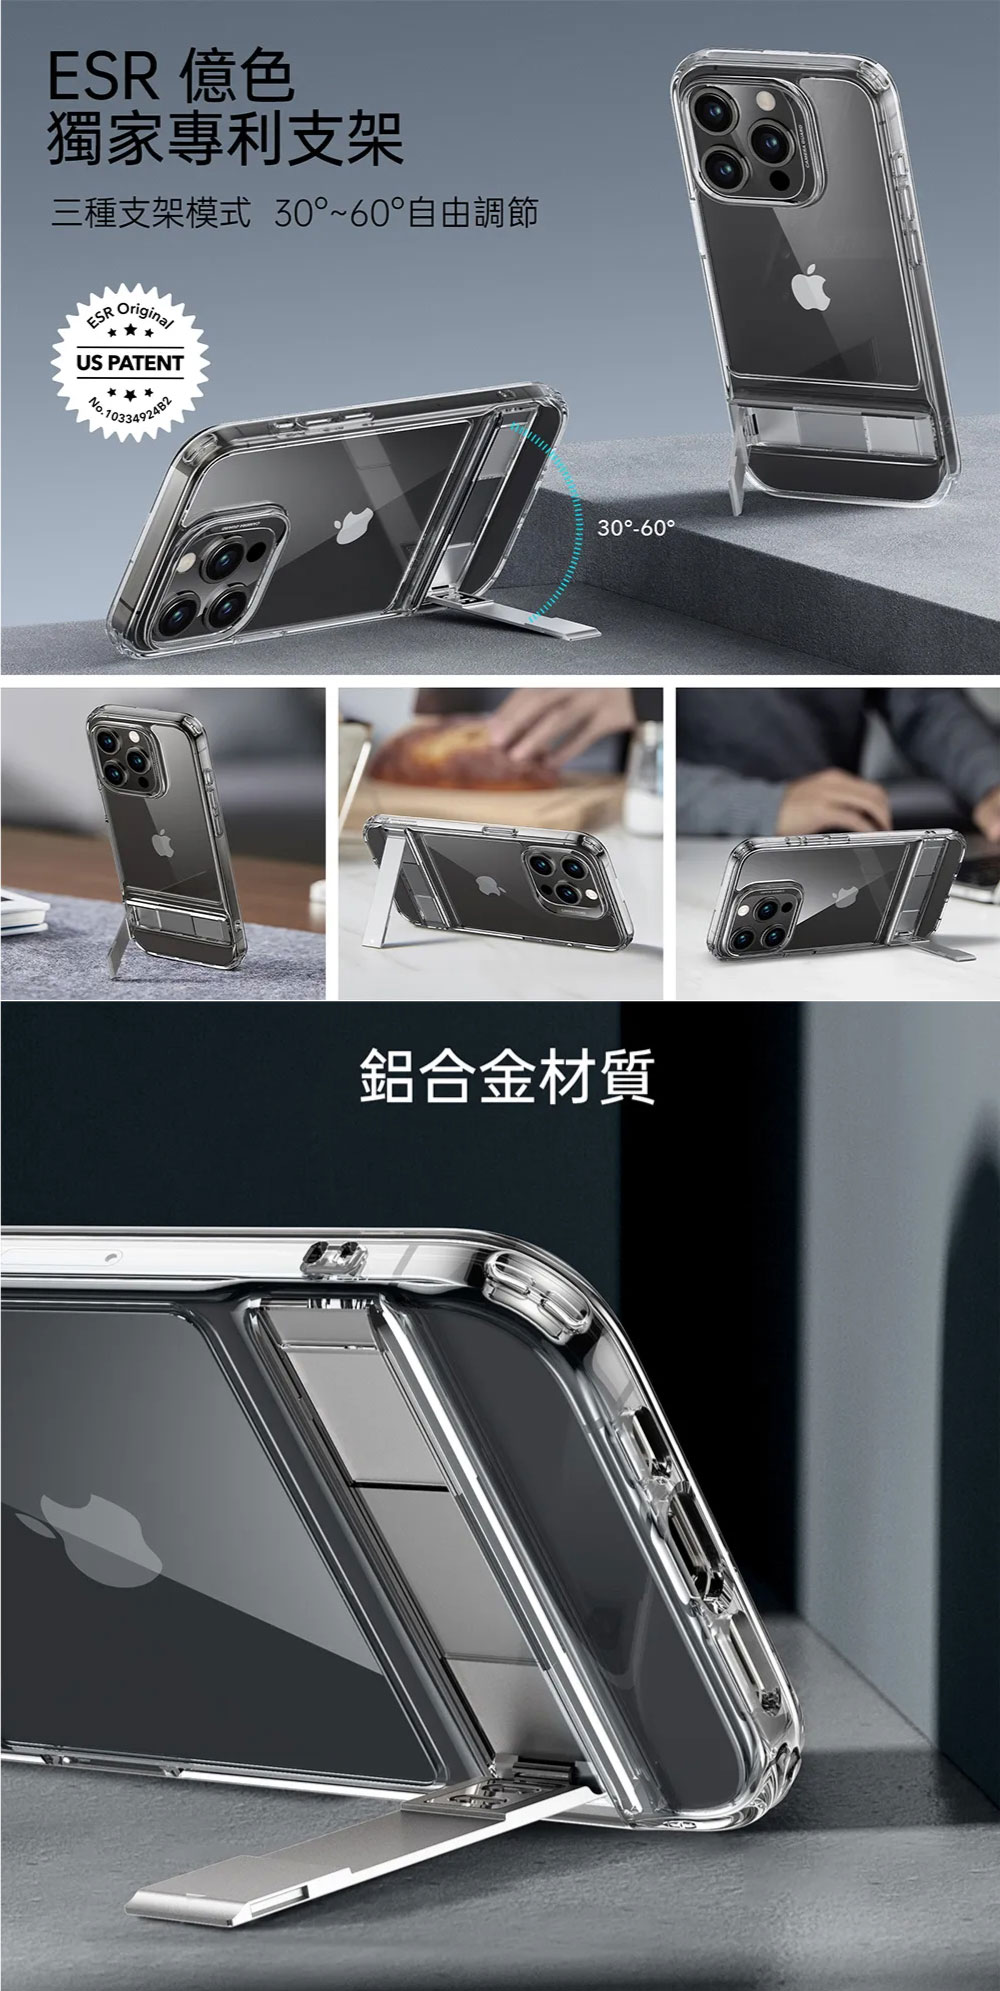 ESR 億色】iPhone 15 Pro 系列雅置保護殼-白